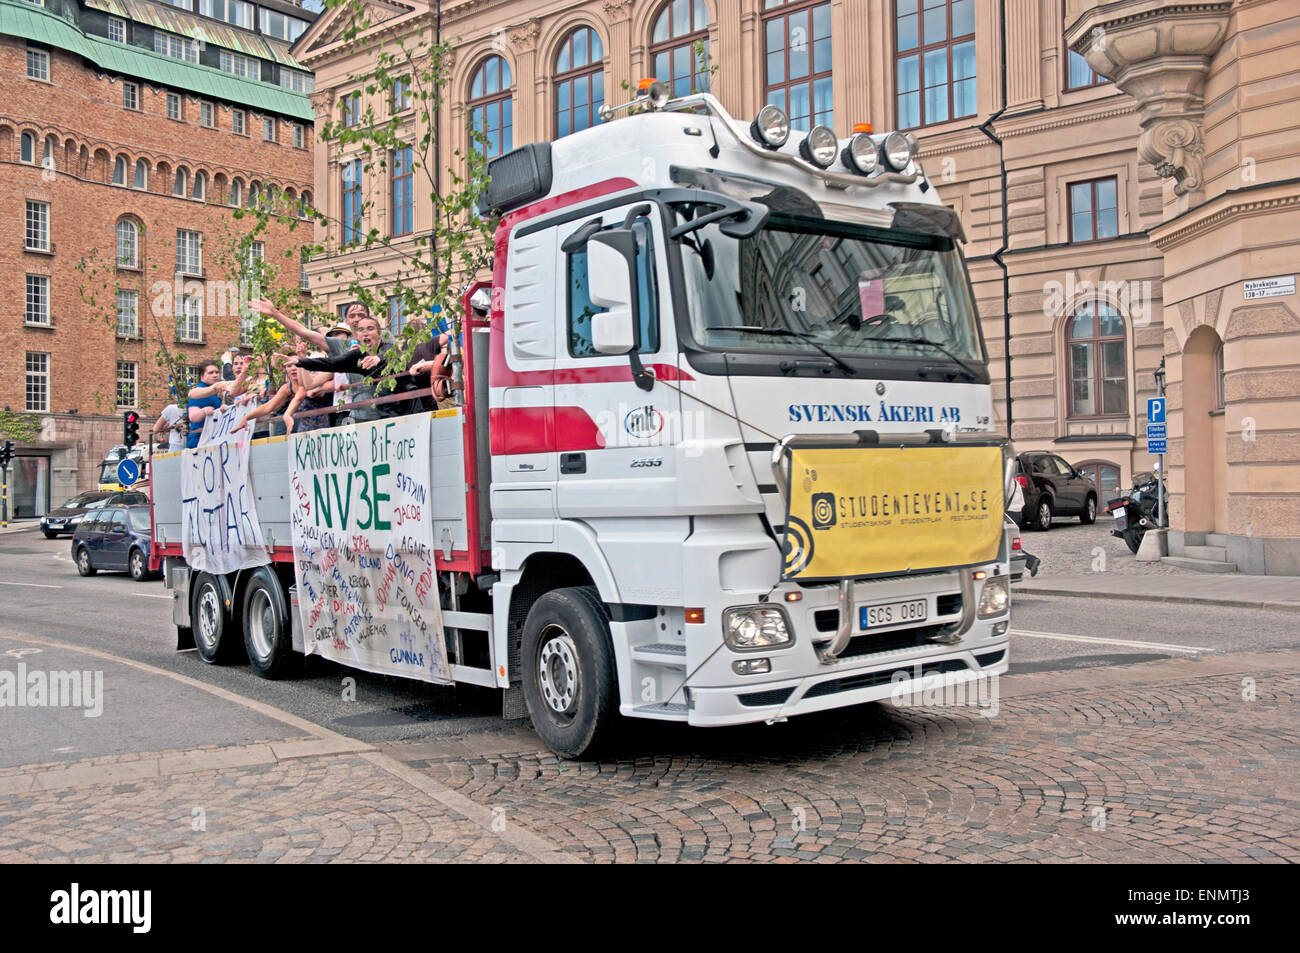 Les étudiants qui viennent hors de l'Université de Stockholm Suède Parade Gradation Banque D'Images